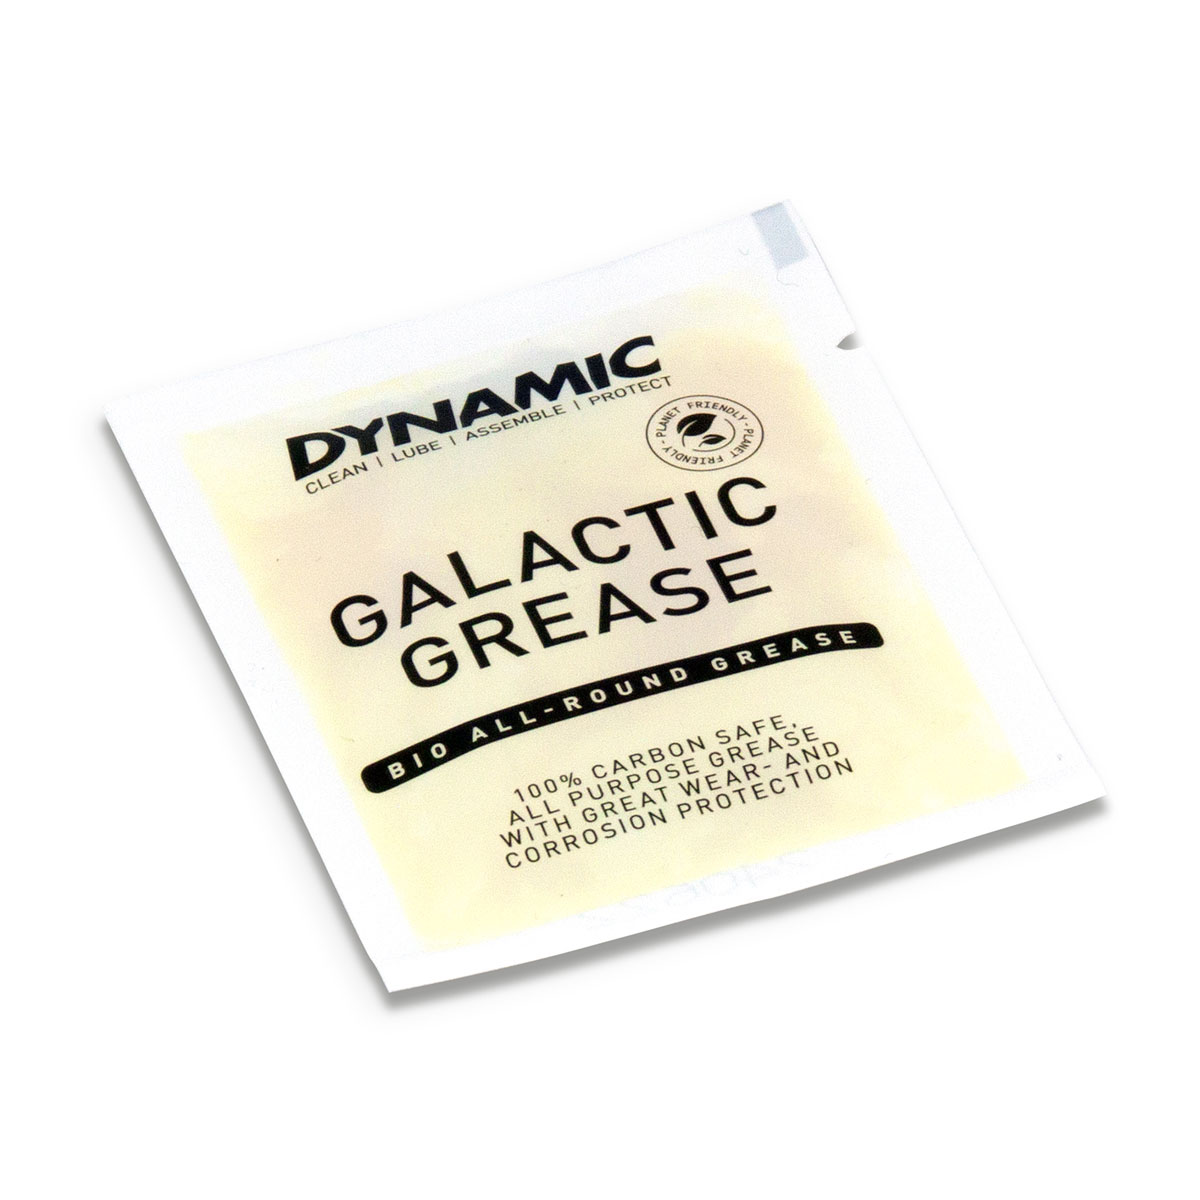 Produktbild von Dynamic Galactic Schmierfett - 5g